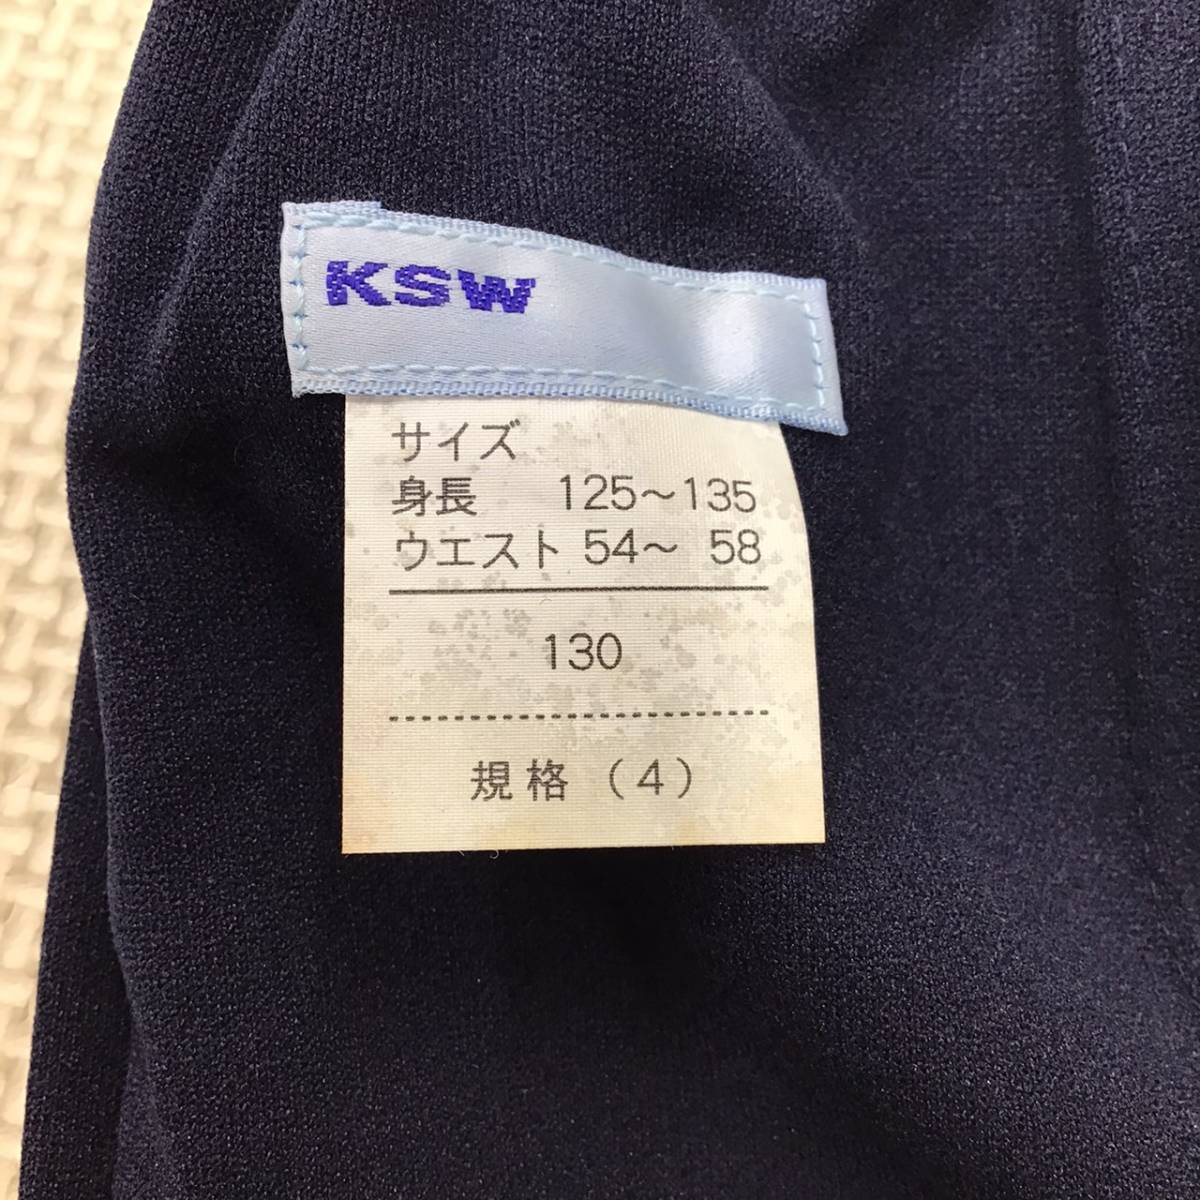 KSW-130 новый товар [KSW] вязаный тренировка шорты размер 130/ короткий хлеб / темно-синий / спортивная форма / движение надеты / для мужчин и женщин / часть ./../ ученик начальной школы / меньше размер 